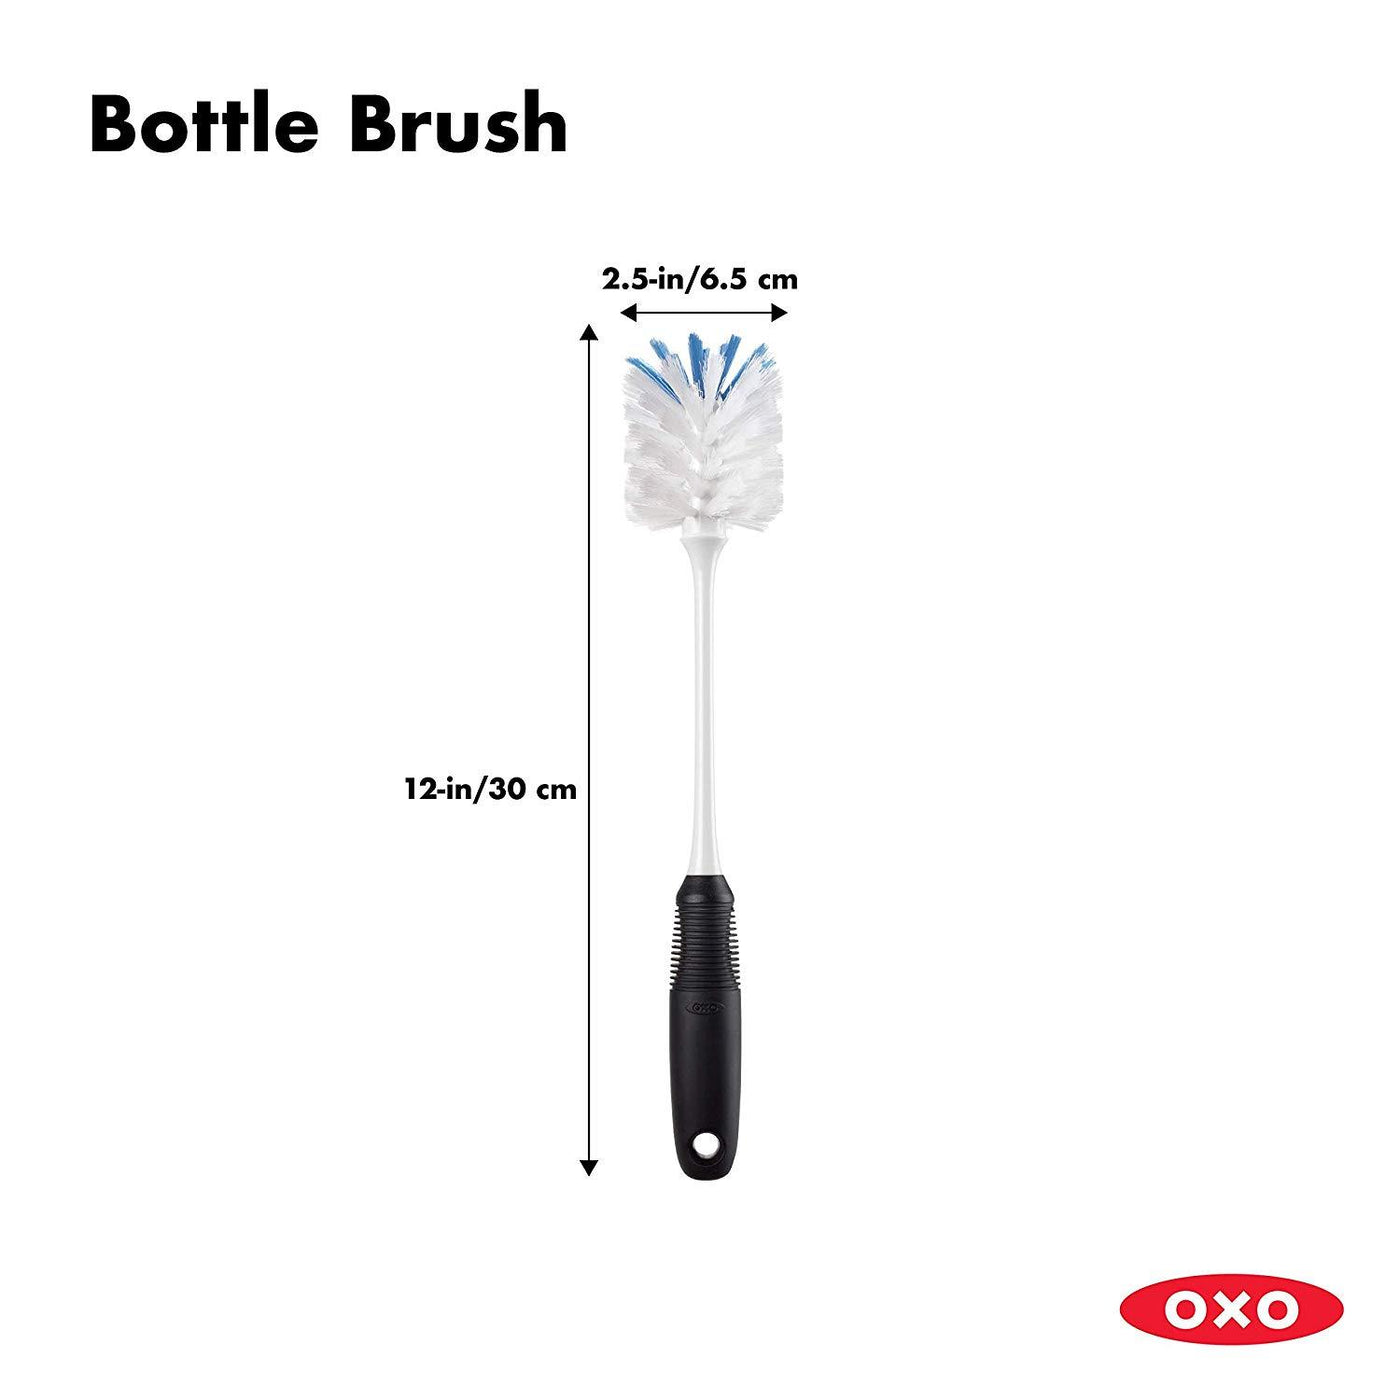 Steel Bottle Brush OXO